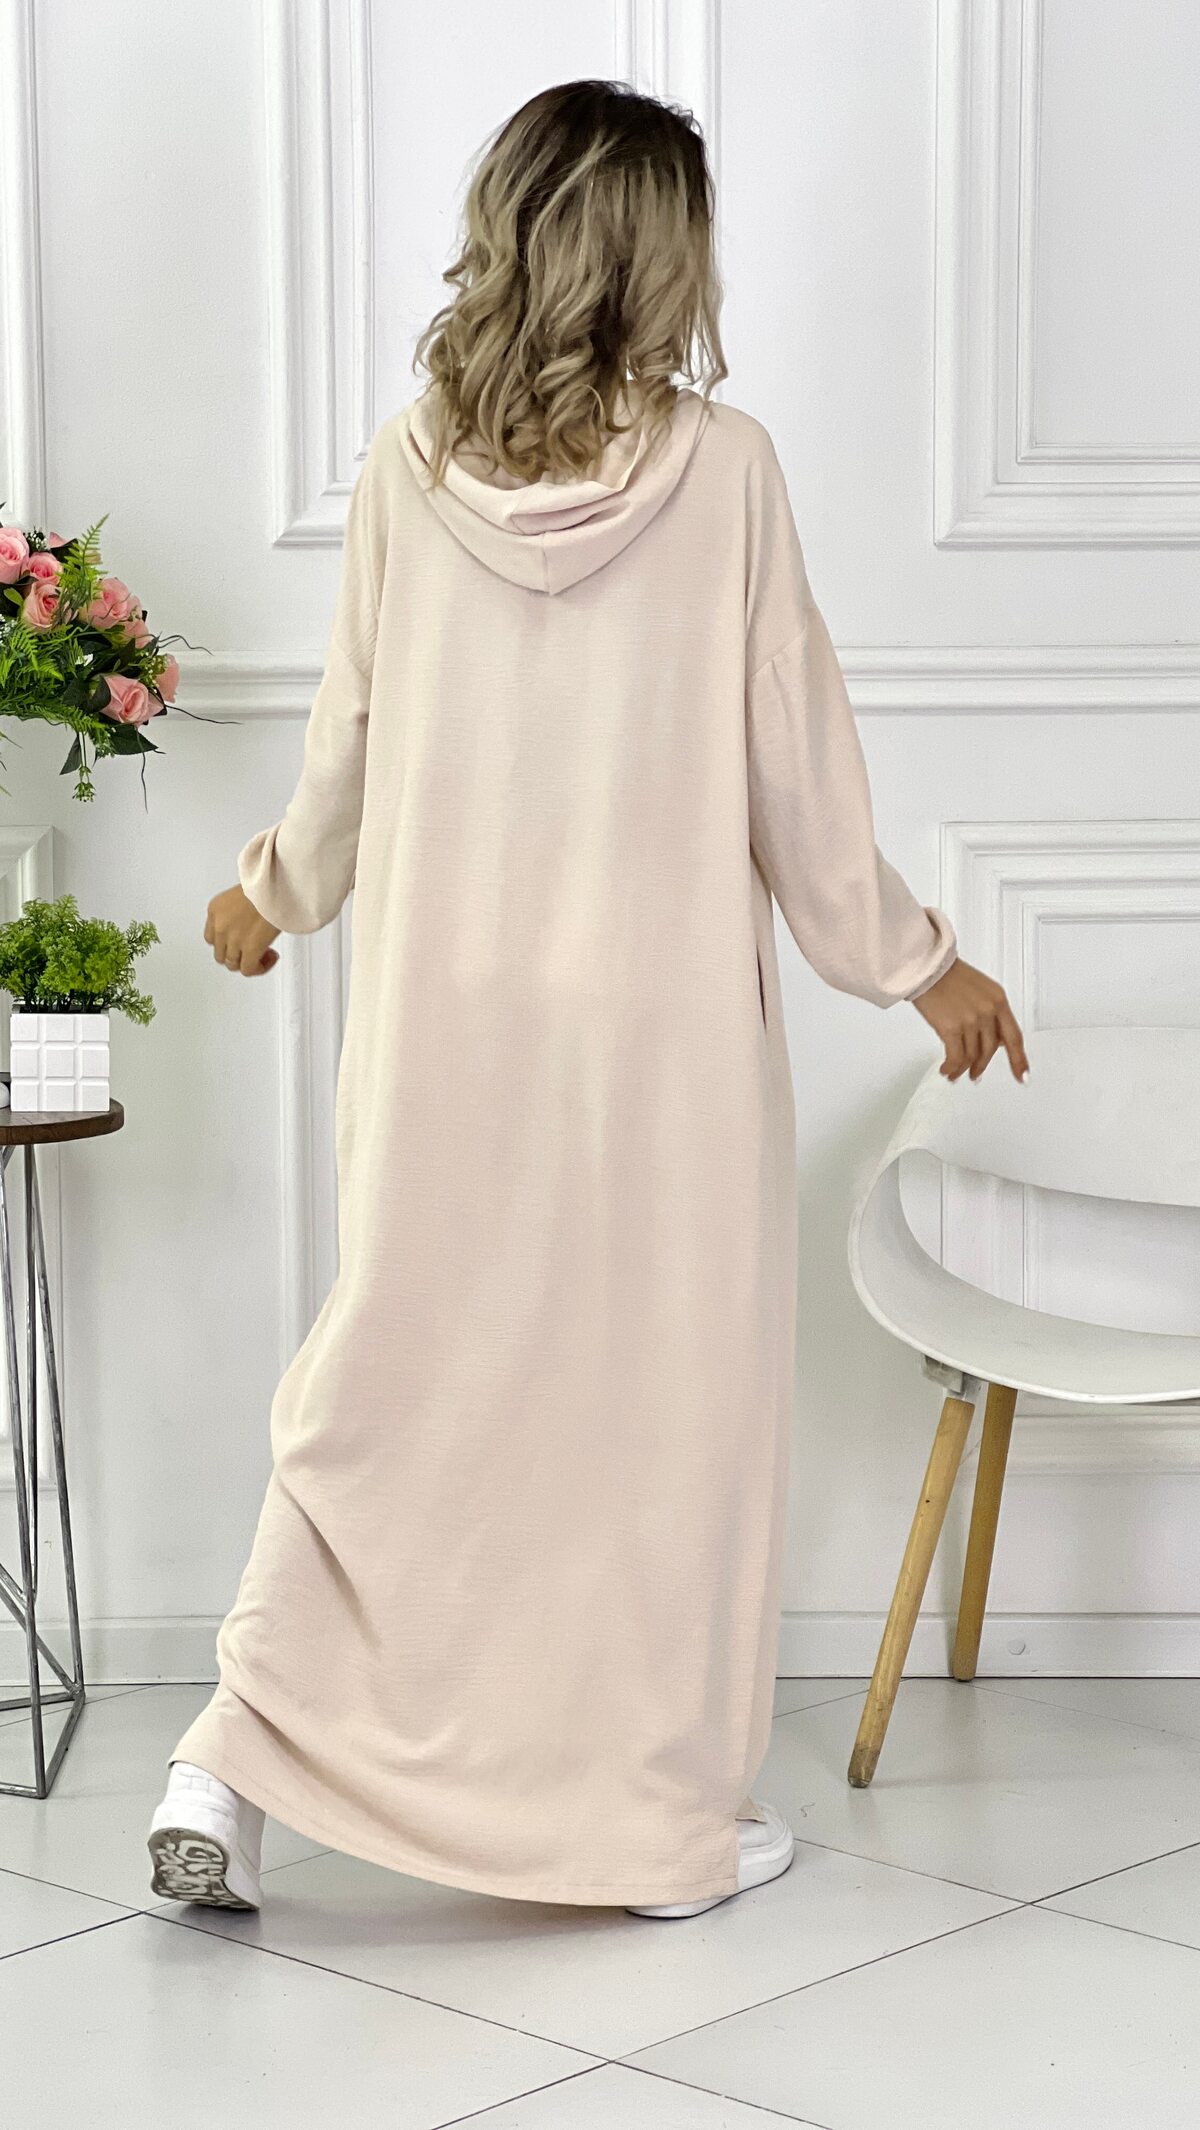 Мусульманская одежда, платье  арт.480955